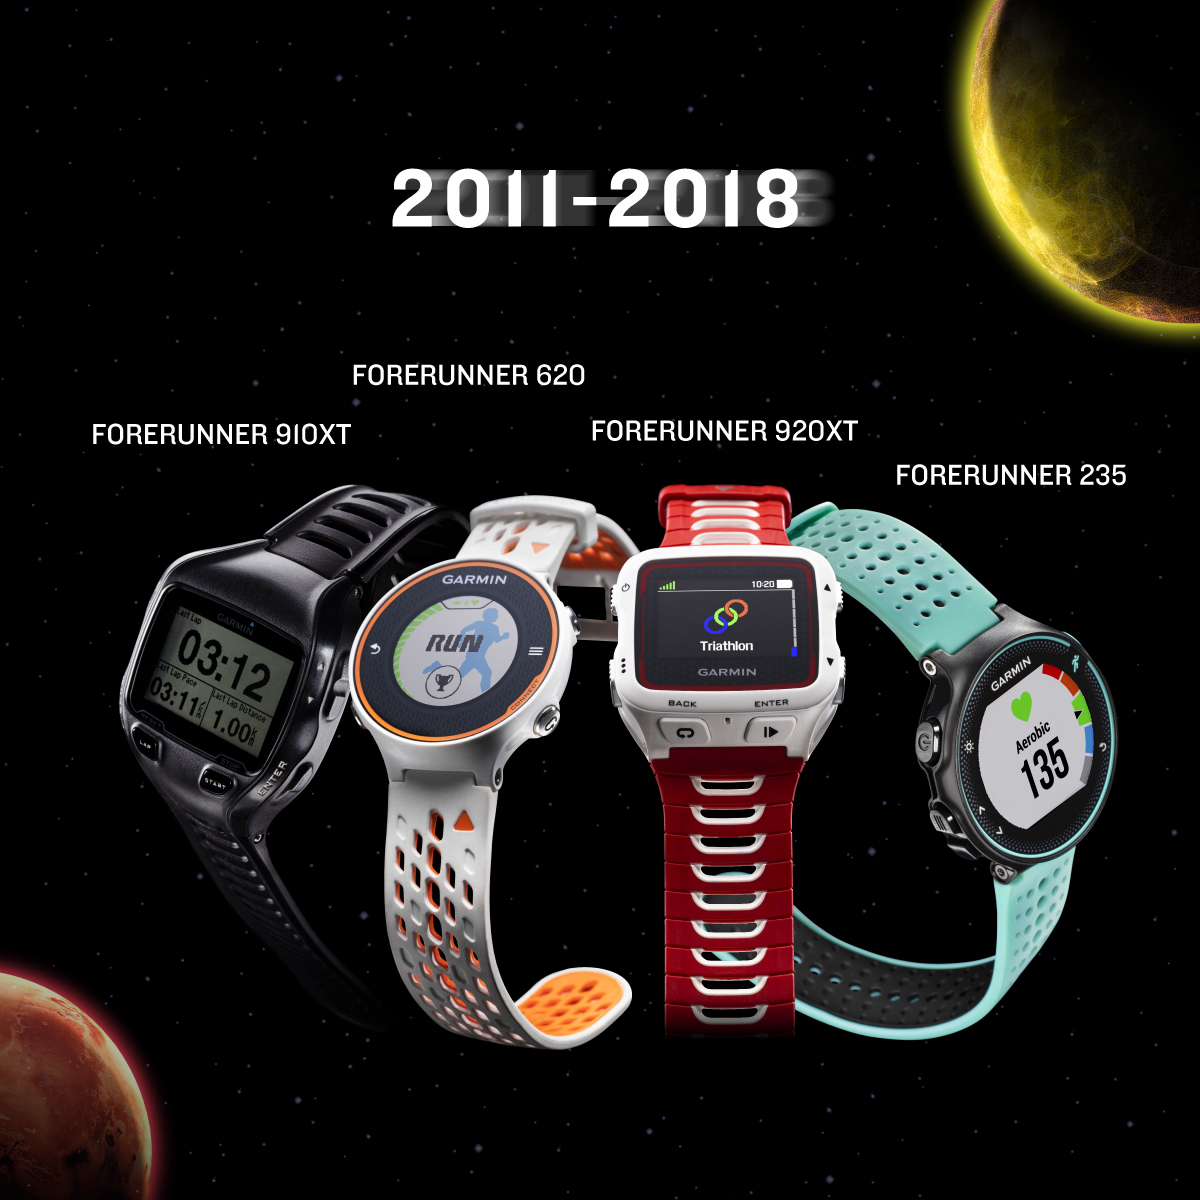 Garmin Forerunner, đồng hồ GPS đầu tiên trên thế giới đã ra đời 20 năm - FR history IG 2011 2018